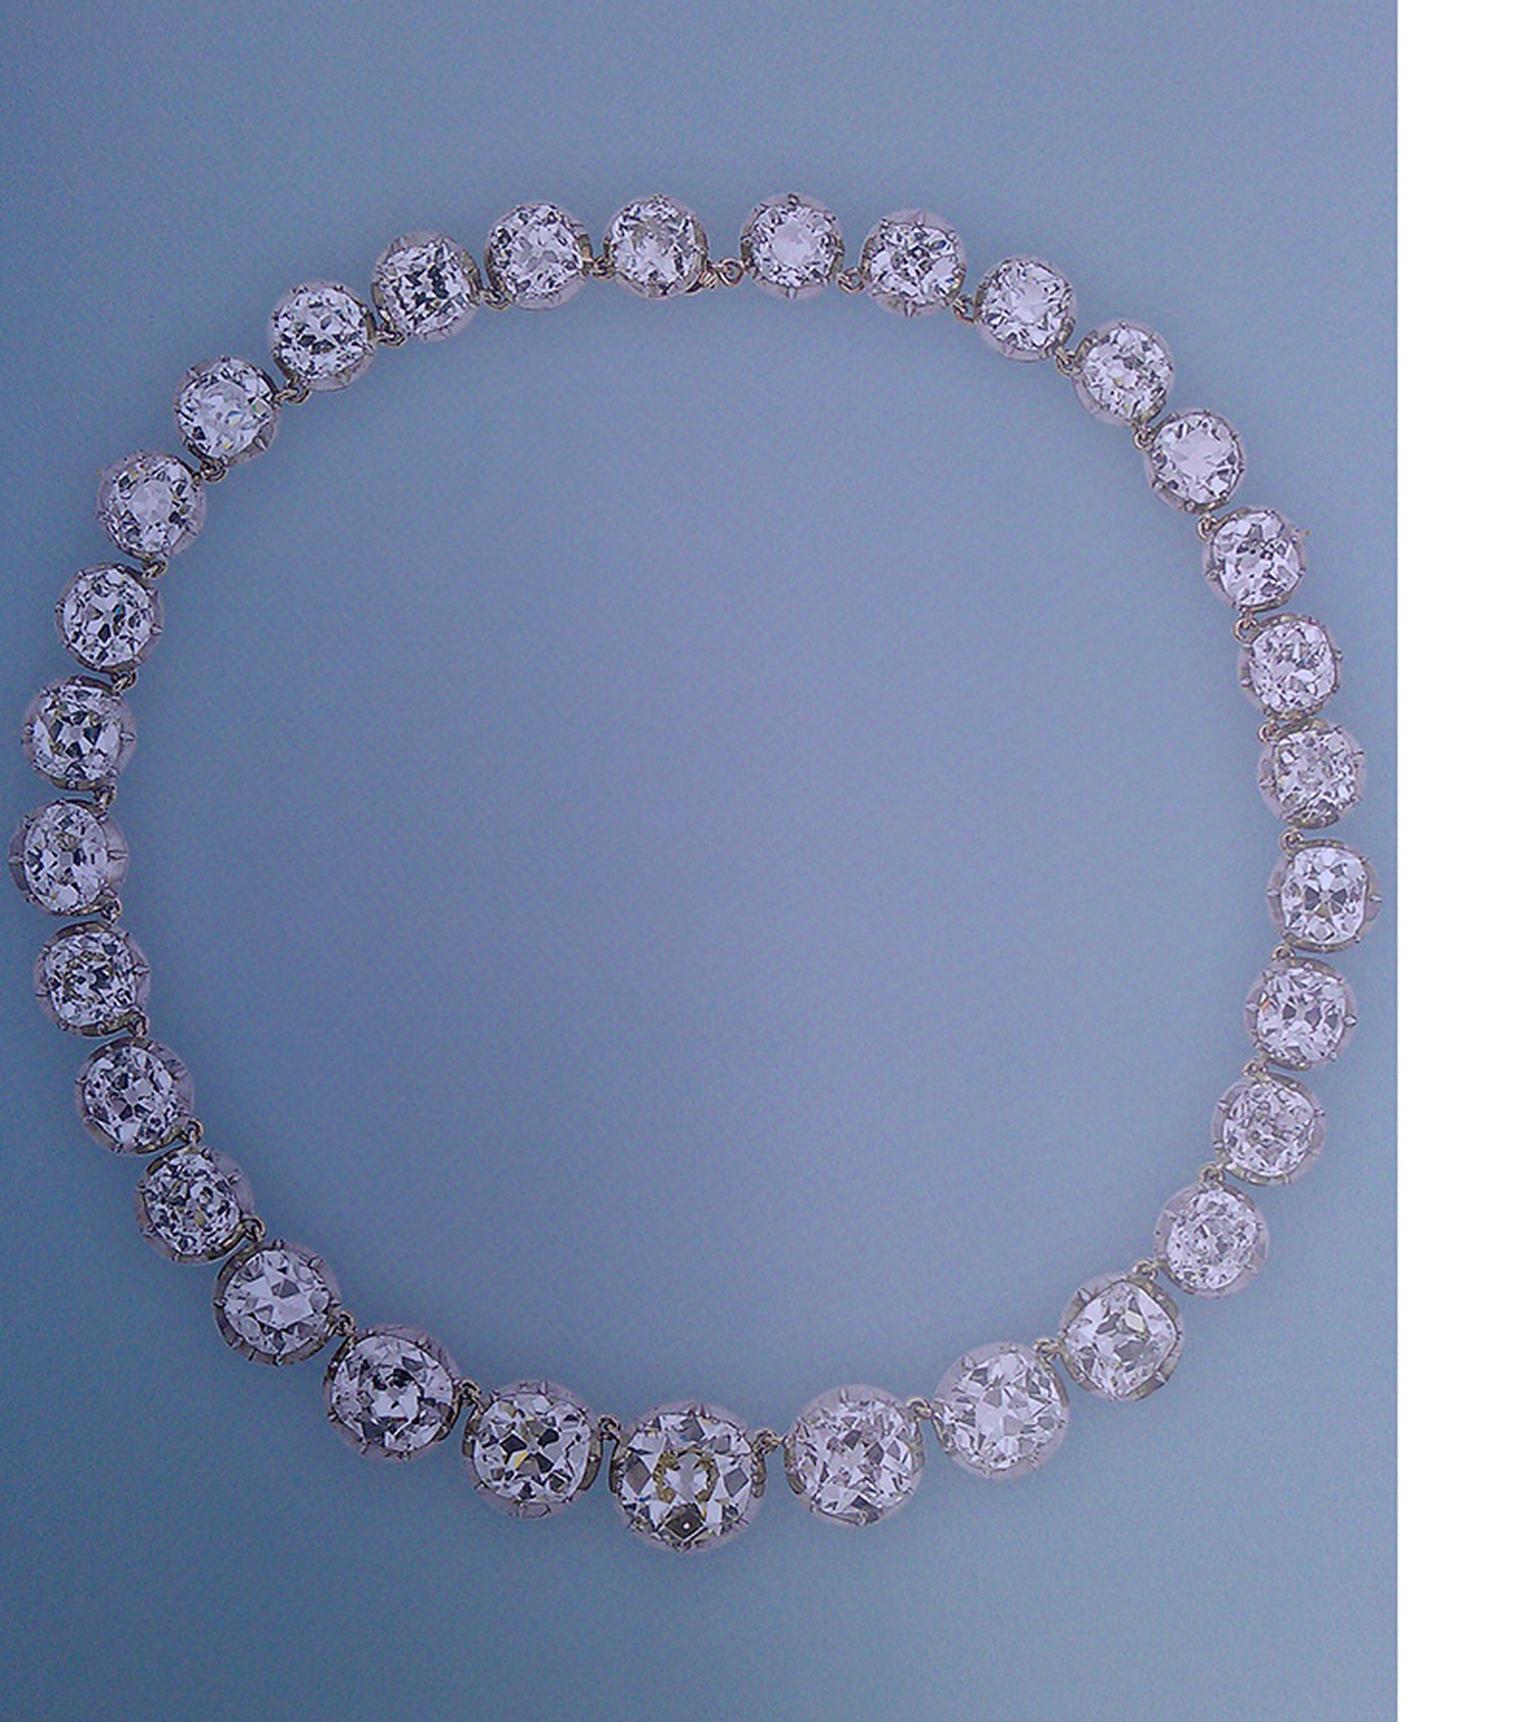 Queen-Alexandra's-Collet-necklace.jpg